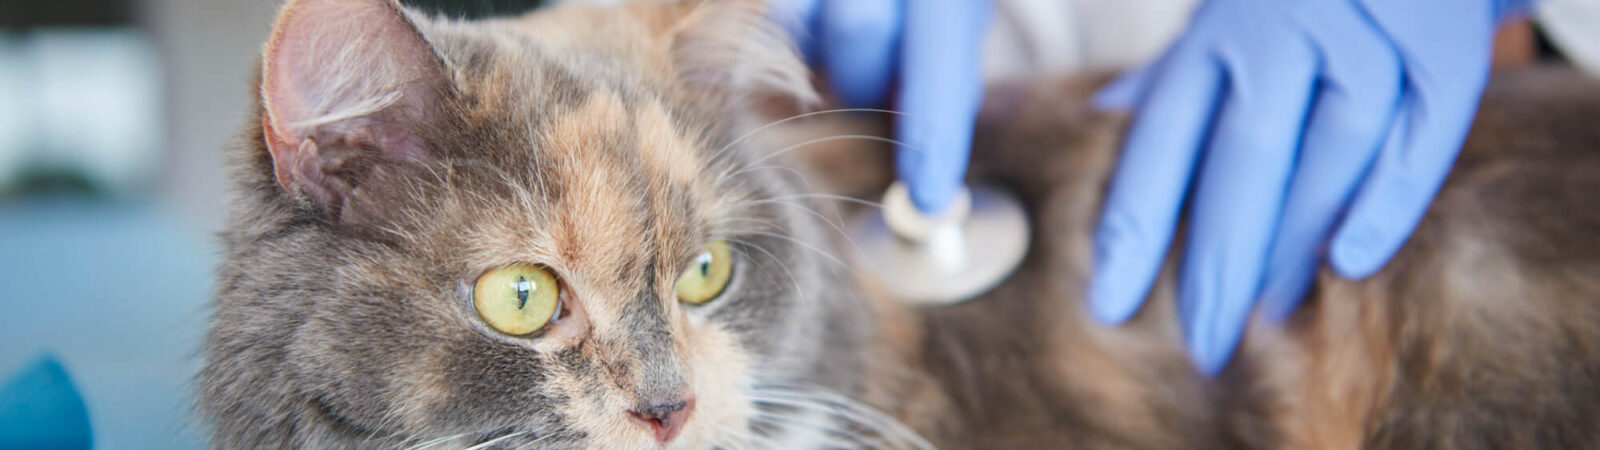 Insuficiência renal em gatos: sinais, causas e tratamento